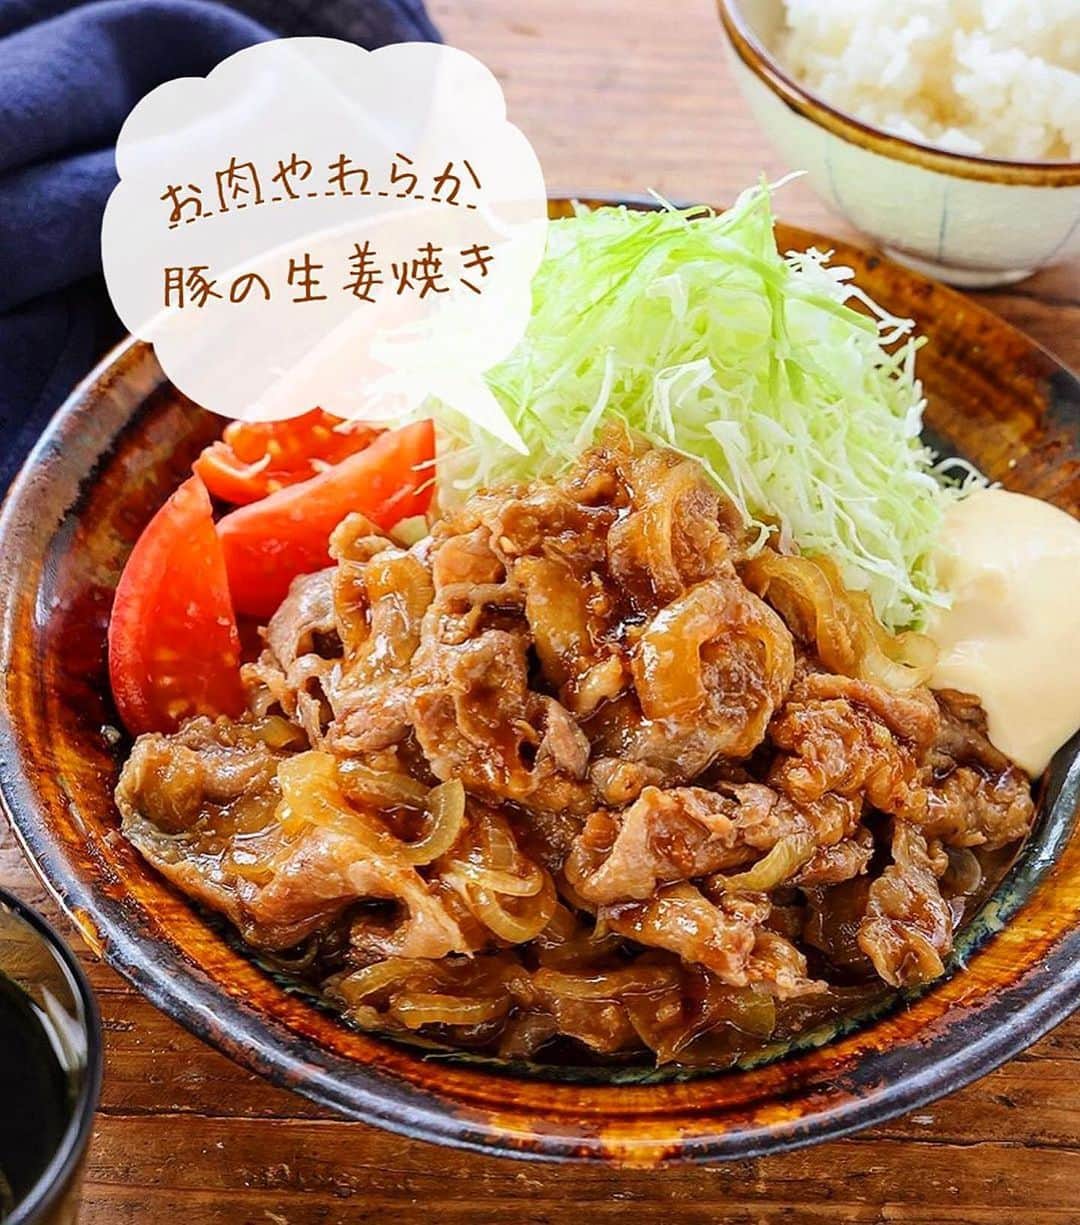 Mizuki【料理ブロガー・簡単レシピ】のインスタグラム：「・新米と食べたい🍚 ⁡ ［#レシピ ］ ーーーーーーーーーーーーーー お肉やわらか！豚の生姜焼き ーーーーーーーーーーーーーー ⁡ ⁡ ⁡ おはようございます☺️ ⁡ 今日ご紹介させていただくのは \ お肉やわらか！豚の生姜焼き / ⁡ 新米の季節には真っ先に登場する うちの大定番おかずです🍚 (再掲載✨) ⁡ お肉は生姜焼き用ではなく ''薄切り肉''を使ってお手軽に💕 粉をまぶしてさっと火を通すと やわらか〜く仕上がりますよ😋 玉ねぎは横に薄切りにする (繊維を断ち切る)ことで しっとりとお肉と馴染みます✨ ⁡ 甘めのしっかり味です！ 間違いなくごはんがすすむので よかったらお試し下さいね🥰 ⁡ ＊薄切り肉は、肩ロース、ロース、バラ こま、切り落としなどなんでもOK♩ (今回は肩ロース切り落とし肉使用) ⁡ ⁡ ⁡ ⋱⋰ ⋱⋰ ⋱⋰ ⋱⋰ ⋱⋰ ⋱⋰ ⋱⋰ 📍簡単・時短・節約レシピ更新中  Threadsもこちらから▼ @mizuki_31cafe ⁡ 📍謎の暮らし＆変なライブ垢 @mizuki_kurashi ⋱⋰ ⋱⋰ ⋱⋰ ⋱⋰ ⋱⋰ ⋱⋰ ⋱⋰ ⁡ ⁡ ⁡ ＿＿＿＿＿＿＿＿＿＿＿＿＿＿＿＿＿＿＿ 【2人分】 豚薄切り肉...200g 薄力粉...適量 玉ねぎ...1/2個 ●おろし生姜(チューブでも)...大1/2 ●醤油・酒...各大2 ●砂糖・みりん...各大1 サラダ油...小2 キャベツの千切り...たっぷり ⁡ 1.豚肉は適当に広げて薄力粉をまぶす。玉ねぎは横薄切りにする。●は合わせておく。 2.フライパンにサラダ油を中火で熱し、豚肉を広げて入れ、玉ねぎをのせる。豚肉に薄く焼き色が付いたらざっと炒め合わせ、●を加えて煮からめる。 3.器に盛り、キャベツを添える。 ￣￣￣￣￣￣￣￣￣￣￣￣￣￣￣￣￣￣￣ ⁡ ⁡ 《ポイント》 ♦︎豚肉は薄切り肉ならなんでもOK！個人的一押しは肩ロース薄切り肉(又は切り落とし肉)です♩やわらかく脂のバランスも最高！ ♦︎玉ねぎは横薄切りにするとしんなりしやすく、他の食材と馴染みます♩ ♦︎フライパンに豚肉を入れる時はあまり重ならないようにするのがおすすめです♩ ♦︎甘めの味付けです♩ ⁡ ⁡ ⁡ ⁡ ⁡ ⁡ 💬💬💬 (いつできるかわからない) 本の撮影がはじまりました🌸 久しぶりに2冊同時進行していて 頭の中がパニックです🤯ww ⁡ しばらくの間 投稿したり、できなかったり お返事できないこともあると思いますが よろしくお願いいたします🙇‍♀️✨ ⁡ ⁡ ⁡ ⁡ ⁡ ⁡ ⋱⋰ ⋱⋰ ⋱⋰ ⋱⋰ ⋱⋰ ⋱⋰ ⋱⋰  愛用している調理器具・器など   #楽天ROOMに載せてます ‎𐩢𐩺  (ハイライトから飛べます🕊️) ⋱⋰ ⋱⋰ ⋱⋰ ⋱⋰ ⋱⋰ ⋱⋰ ⋱⋰ ⁡ ⁡ ⁡ ⁡ ⁡ ✼••┈┈┈┈┈••✼••┈┈┈┈┈••✼ 今日のごはんこれに決まり！ ‎𓊆#Mizukiのレシピノート 500品𓊇 ✼••┈┈┈┈┈••✼••┈┈┈┈┈••✼ ⁡ ˗ˏˋ おかげさまで25万部突破 ˎˊ˗ 料理レシピ本大賞準大賞を受賞しました✨ ⁡ 6000点の中からレシピを厳選し まさかの【500レシピ掲載】 肉や魚のメインおかずはもちろん 副菜、丼、麺、スープ、お菓子 ハレの日のレシピ、鍋のレシピまで 全てこの一冊で完結 𓌉◯𓇋 (全国の書店・ネット書店で発売中) ⁡ ⁡ ⁡ ⁡ ⁡ #生姜焼き #豚肉レシピ #玉ねぎレシピ #生姜焼きレシピ #ごはんがすすむ #節約料理  #簡単料理  #時短料理 #mizukiレシピ  #時短レシピ #節約レシピ #簡単レシピ」